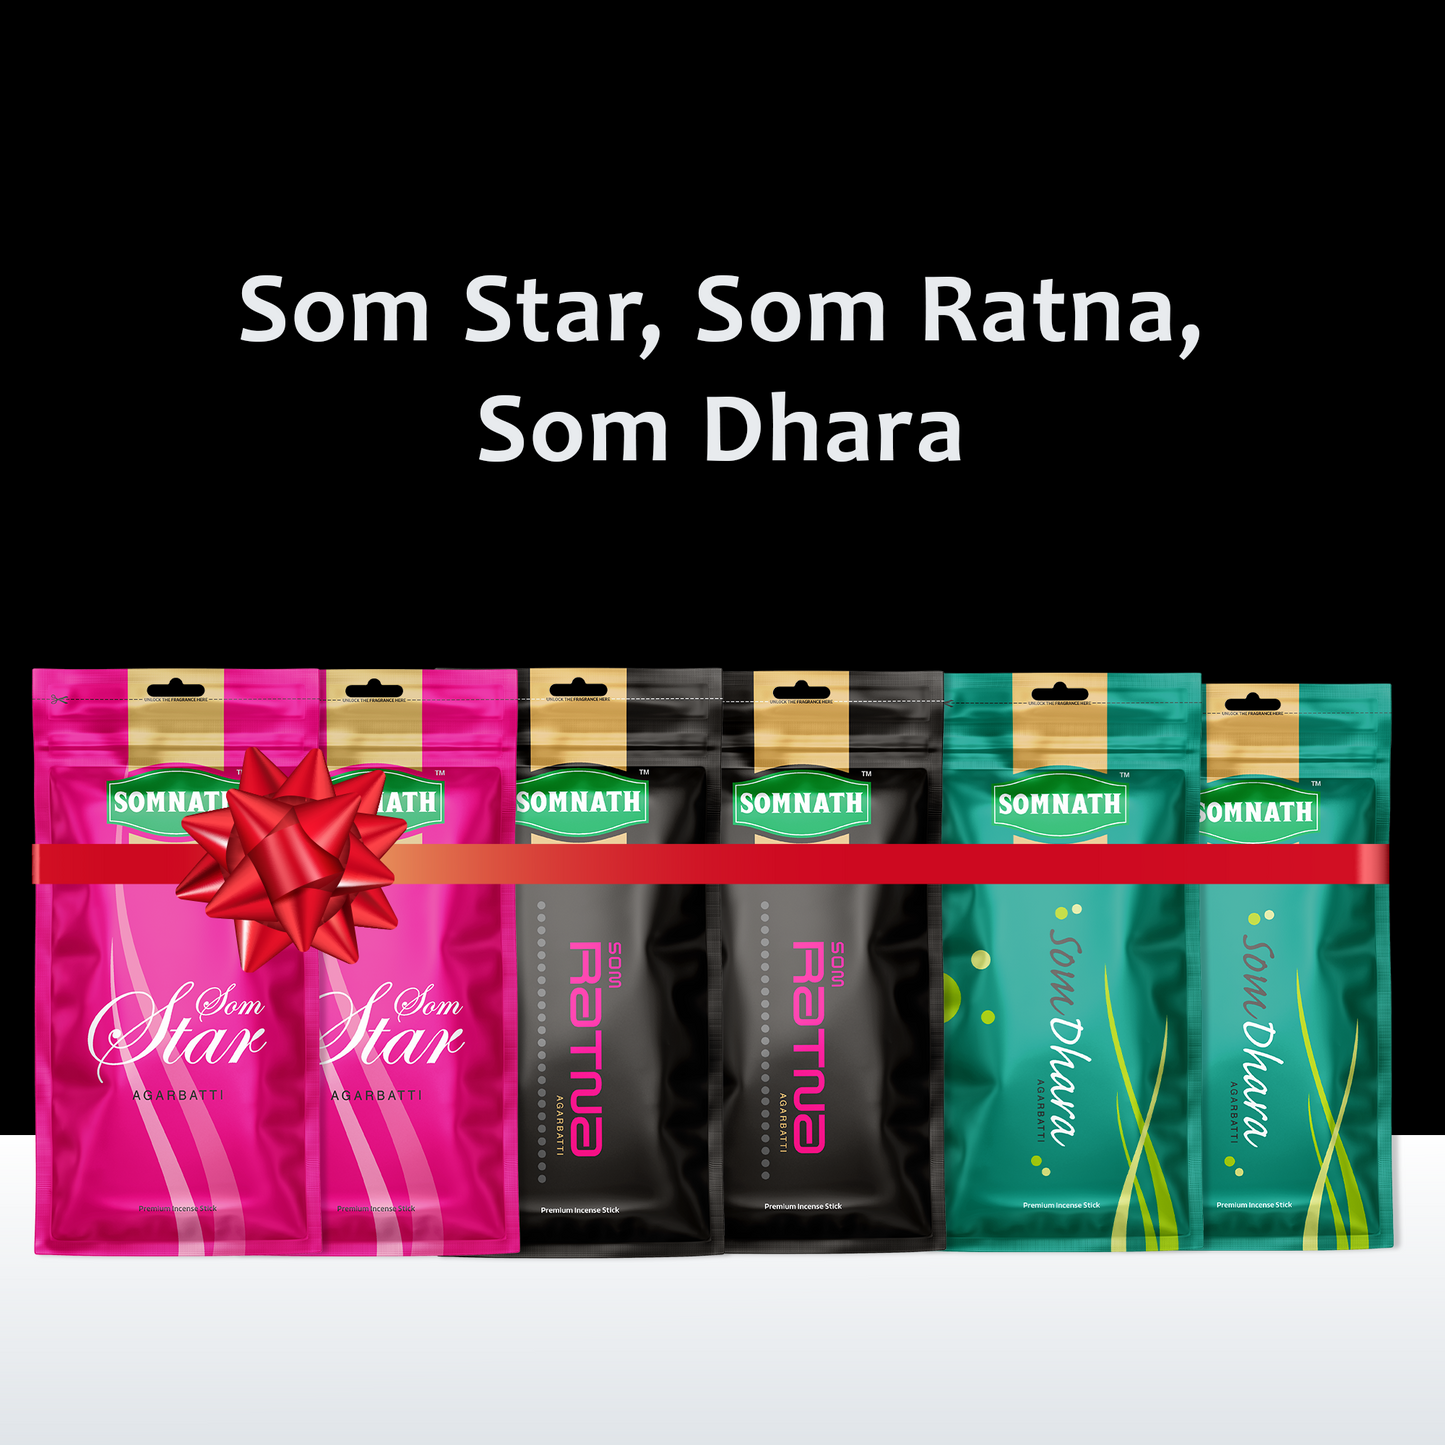 Special Incense Stick Combo, (Som Star, Som Ratna, Som Dhara) Agarbatti Combo.